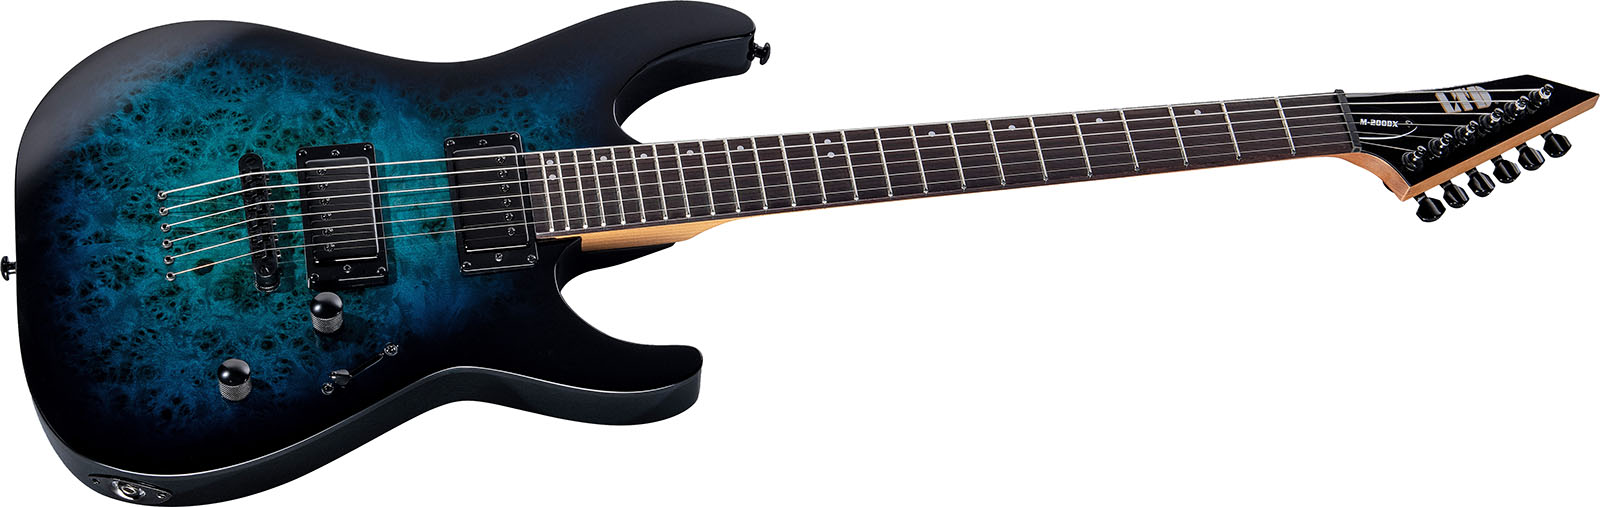 Ltd M200dx 2h Ht Rw - Blue Burst - Elektrische gitaar in Str-vorm - Variation 2